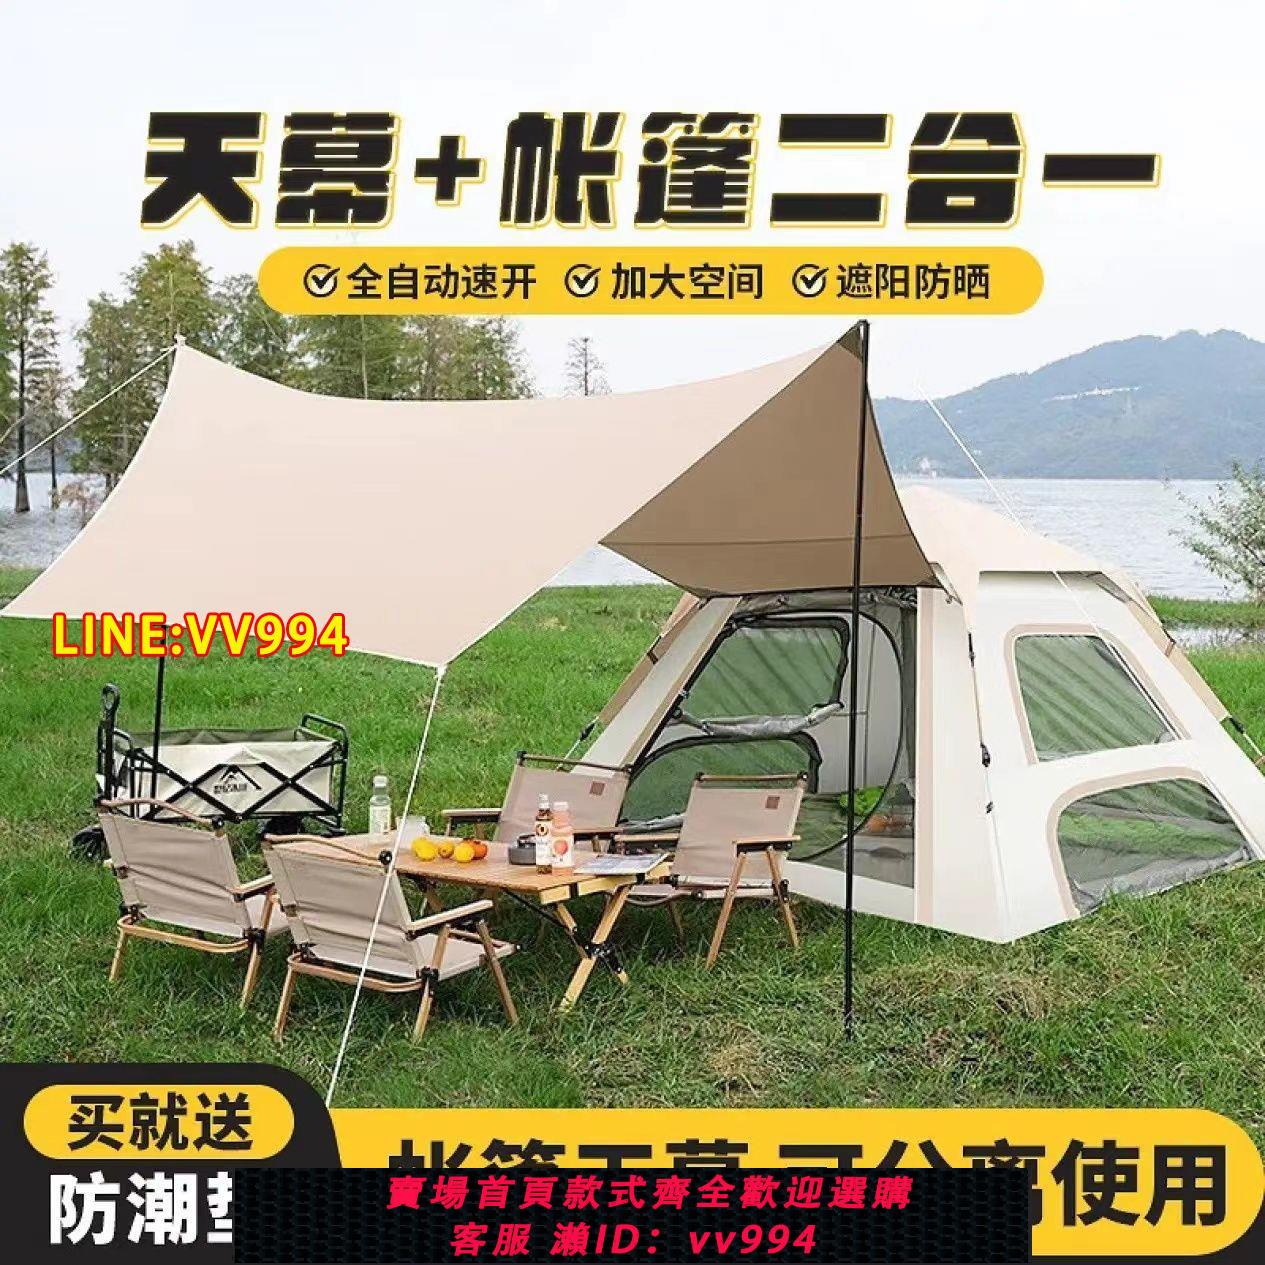 可打統編 自由探險帳篷戶外露營天幕一體式全自動速開防曬防雨野餐便攜式折